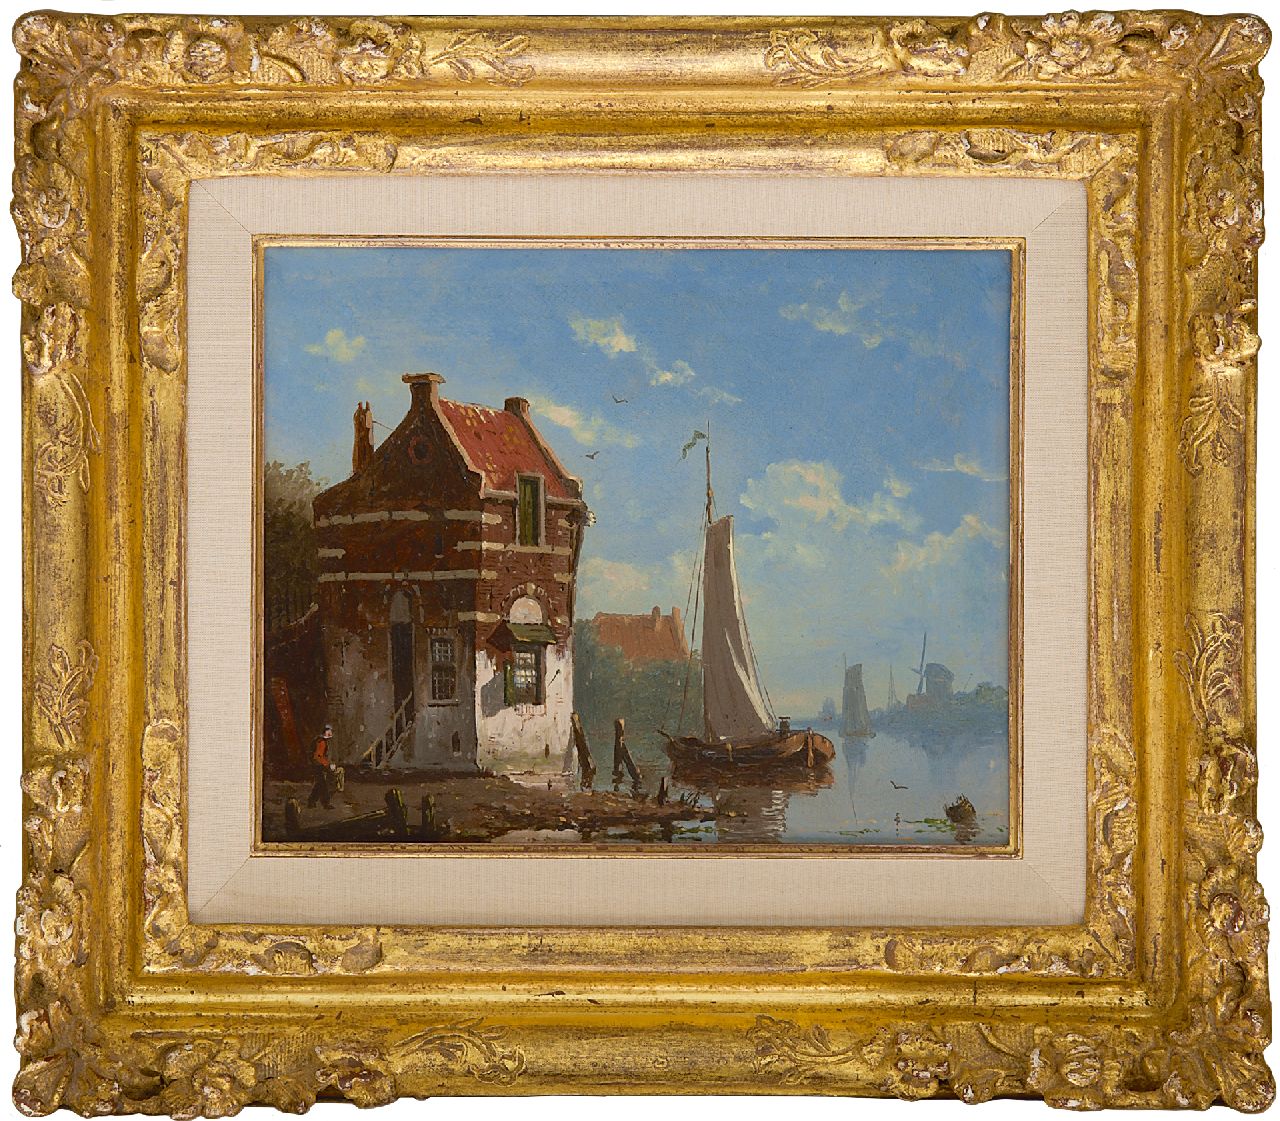 Roosdorp F.  | Frederik Roosdorp | Schilderijen te koop aangeboden | Zeilschepen op kalme rivier bij een dorpje, olieverf op paneel 14,2 x 17,6 cm, gesigneerd linksonder met initiaal